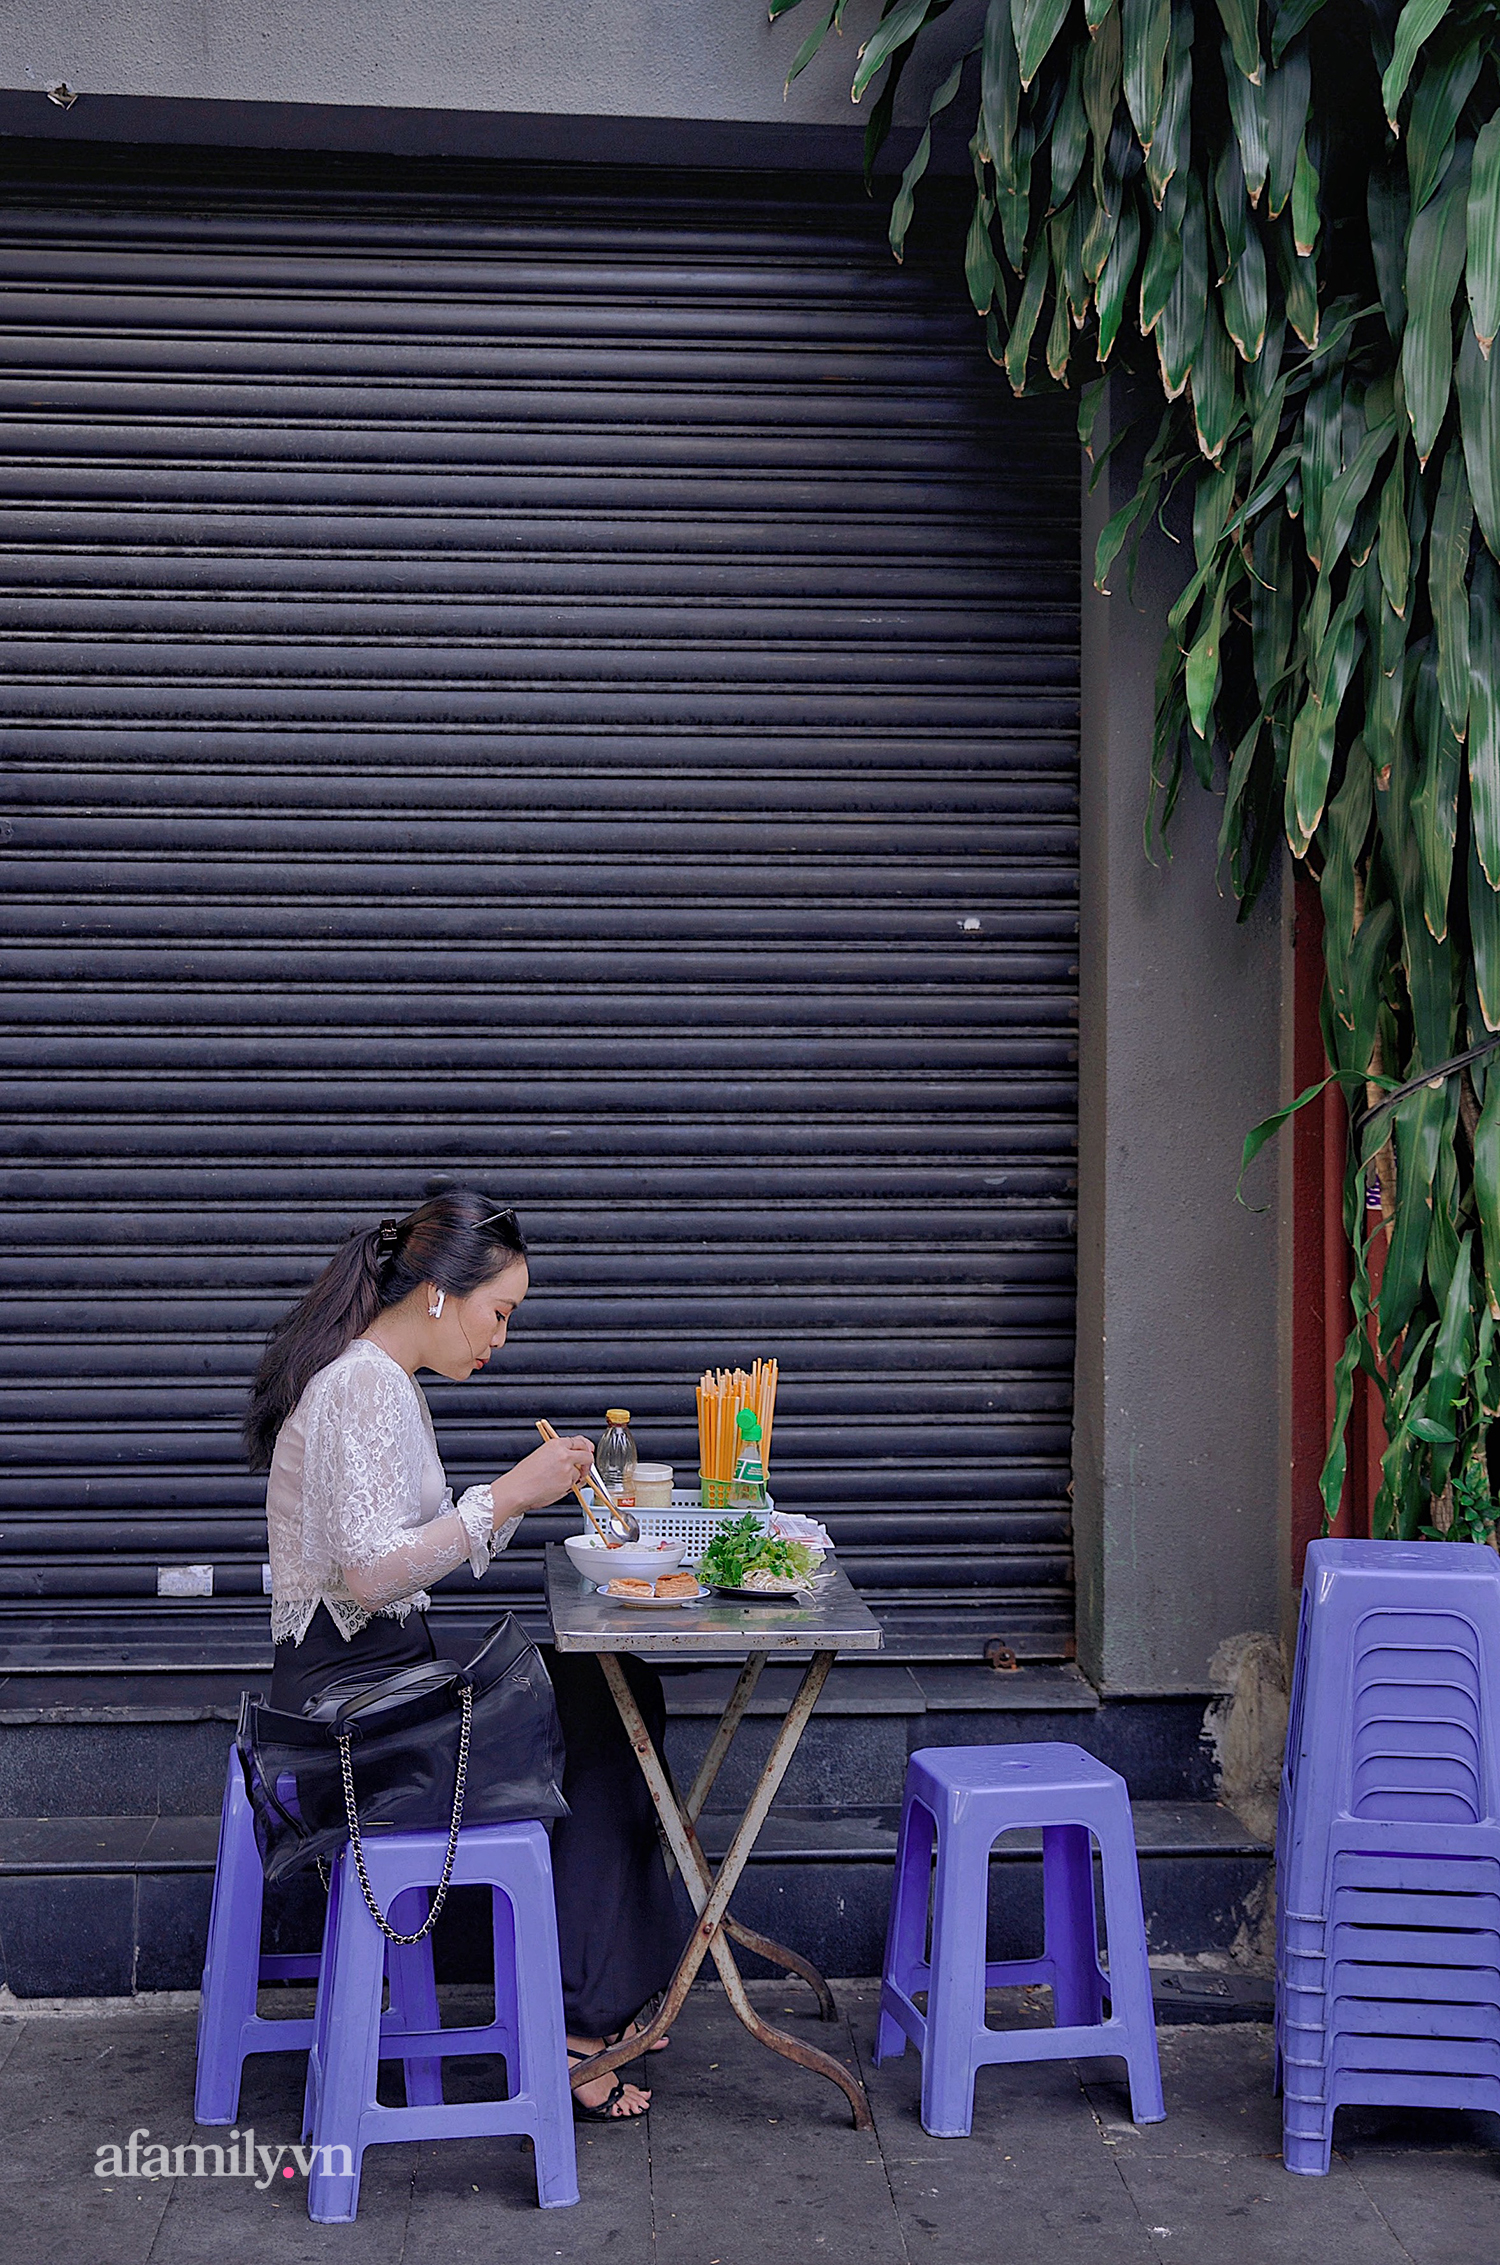 Tiệm hủ tiếu hơn 70 năm nổi tiếng với nồi sốt cà chua hầm cả Sài Gòn không đâu có, sở hữu tấm bảng hiệu được "định giá" nghìn đô và món bánh Pháp "phải siêng mới được ăn!?" - Ảnh 9.